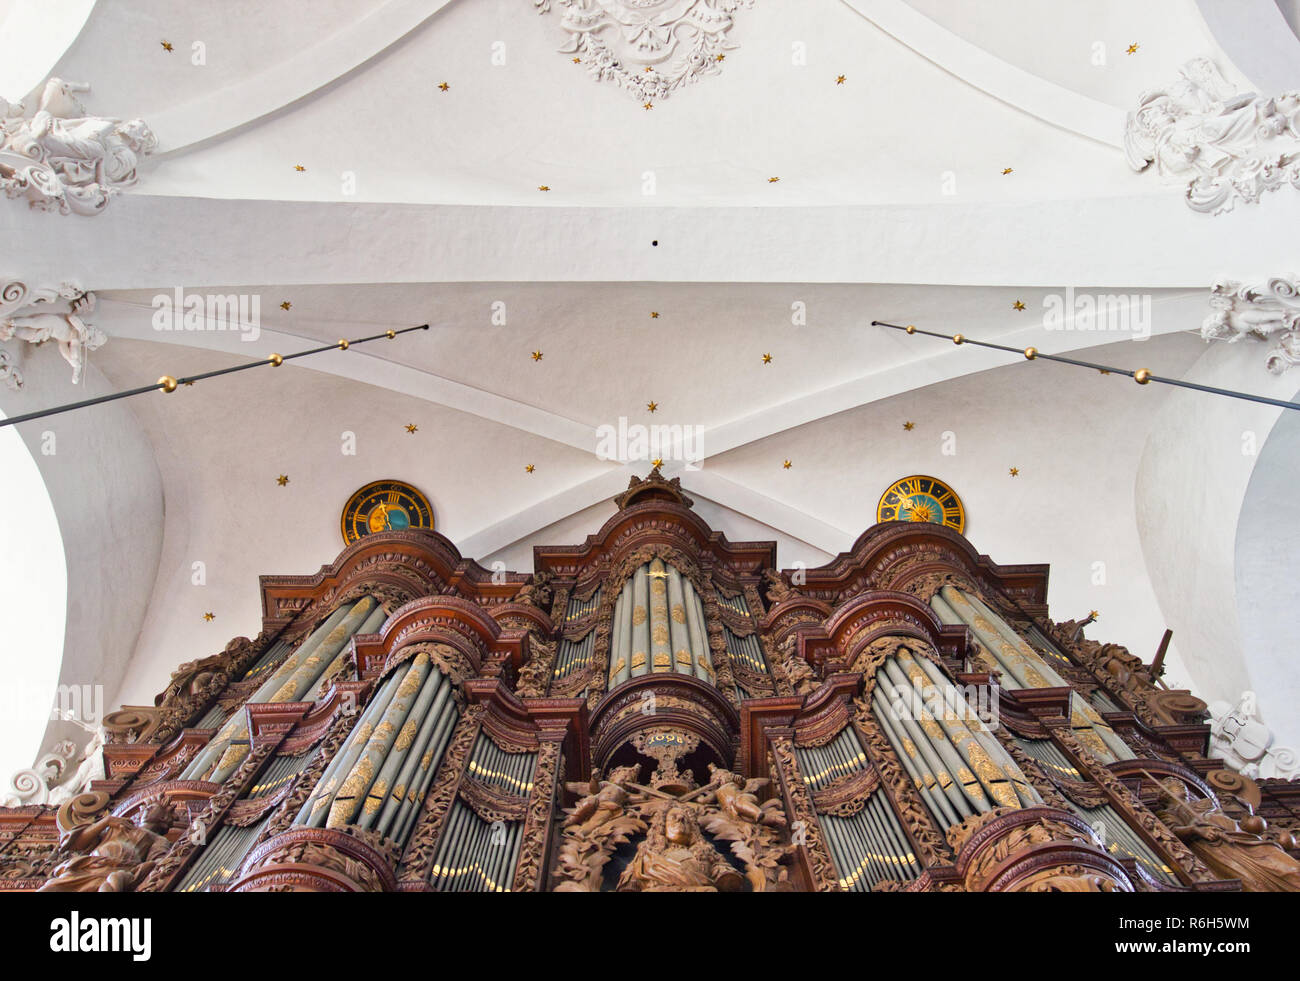 Grand orgue du 17ème siècle, Vor Frelsers avec Kirke, l'église de Notre Sauveur, Copenhague, Danemark, Scandinavie Banque D'Images